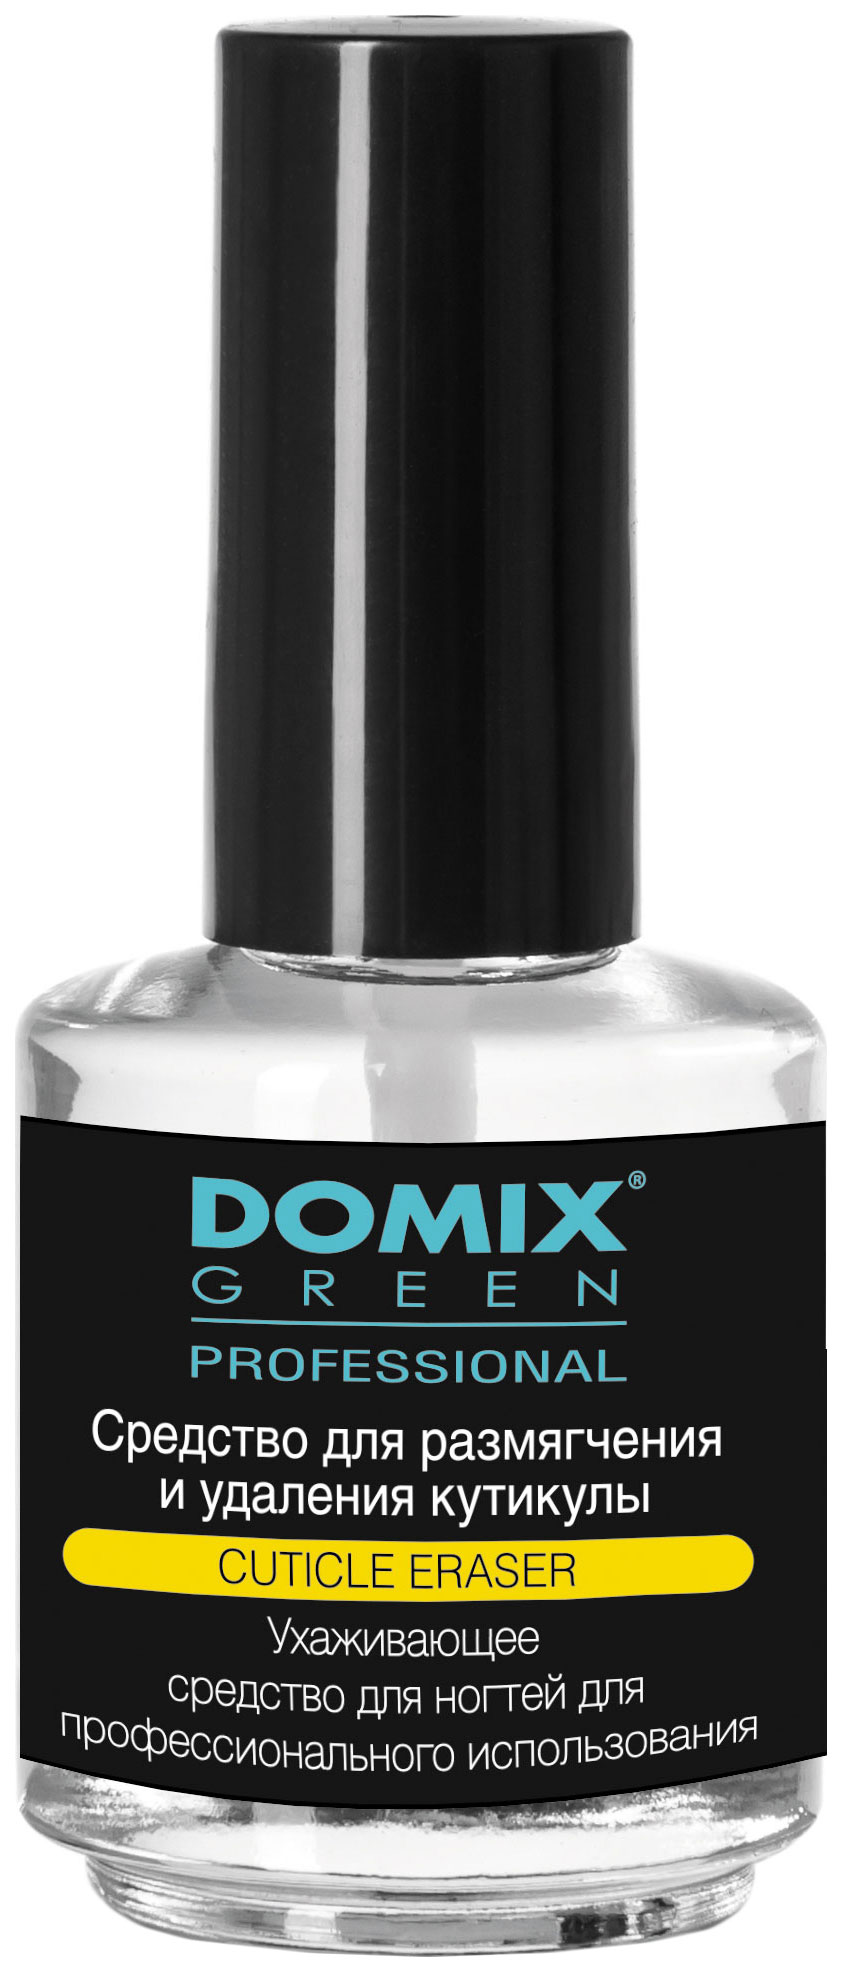 Средство для удаления кутикулы Domix Green Professional Cuticle Eraser 17 мл domix подставка под салонные принадлежности бирюзовая domix green professional